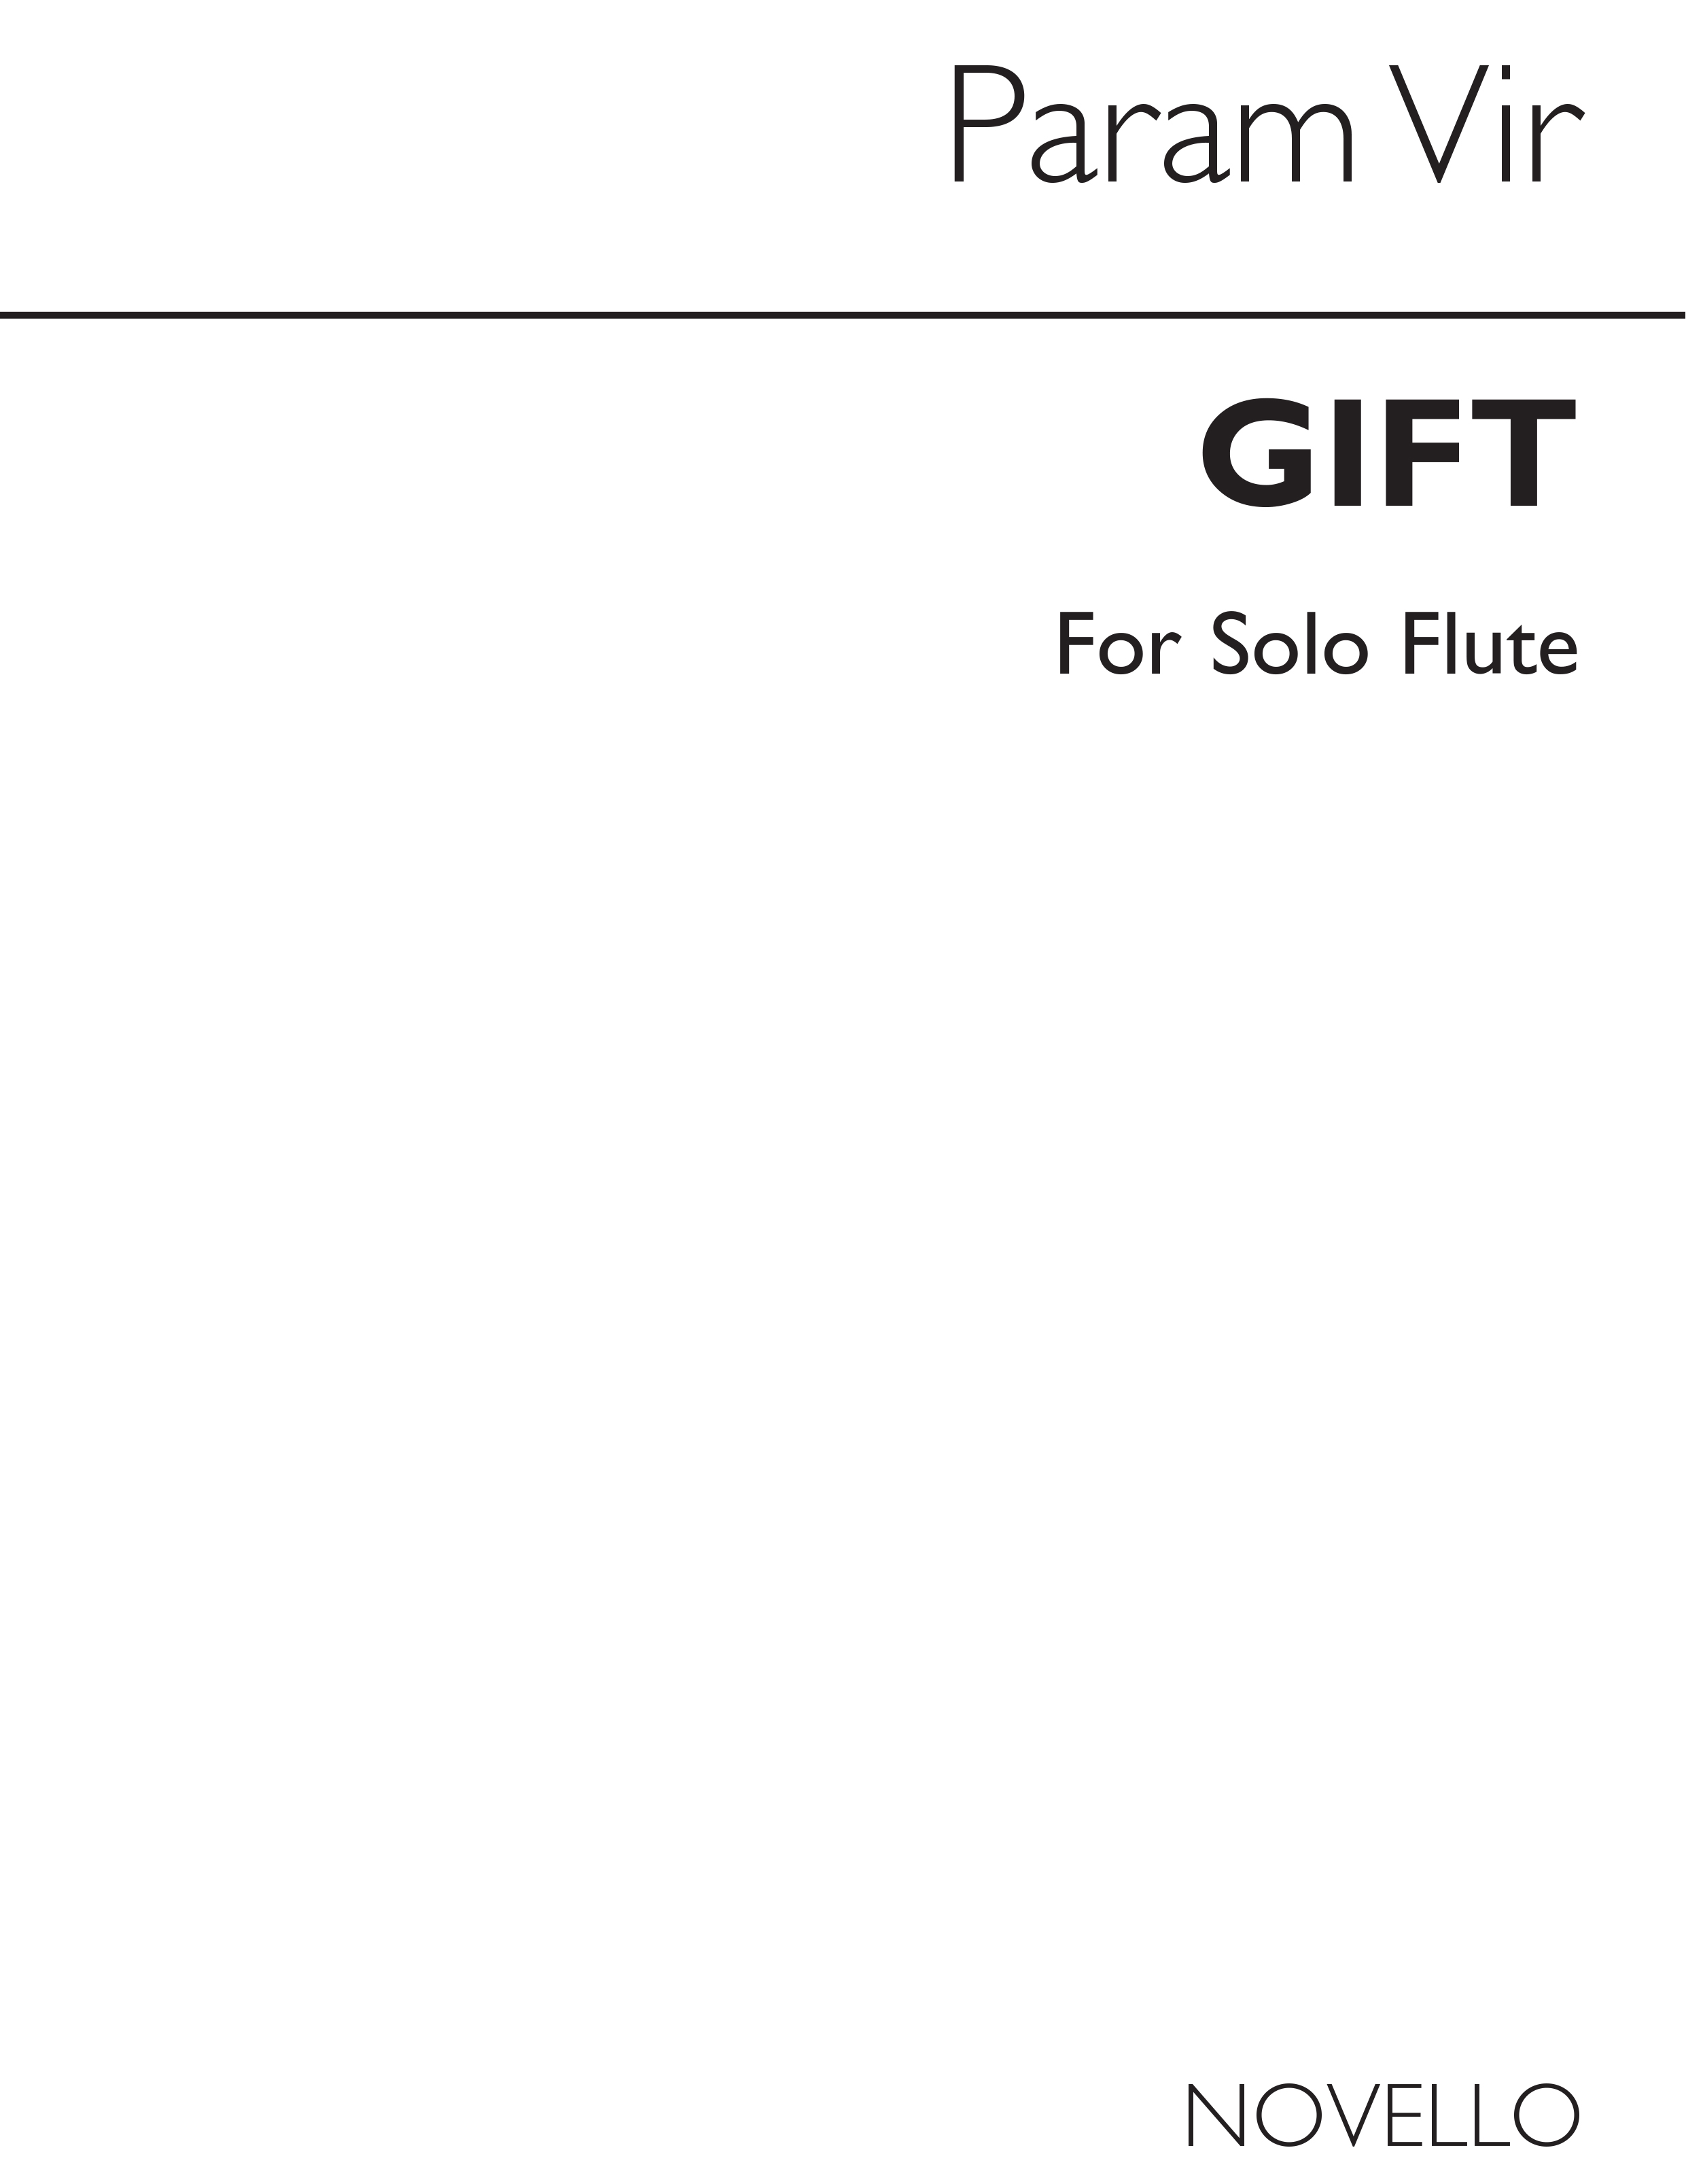 Vir: Gift for Flute Solo